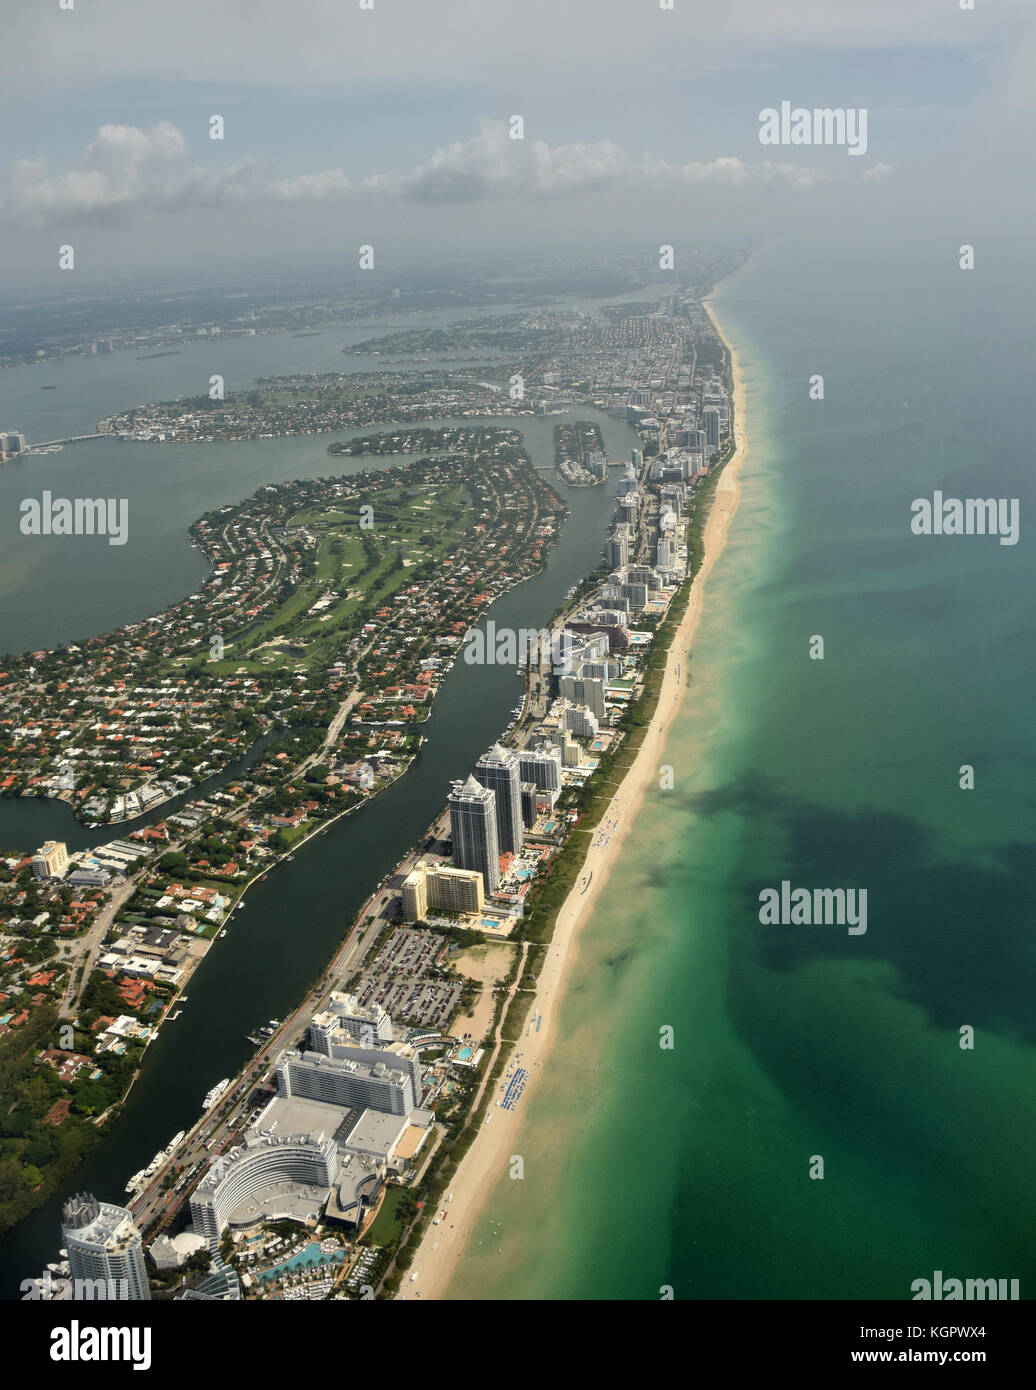 Aerial view of coastline beaches in South Florida near Miami Stock Photo